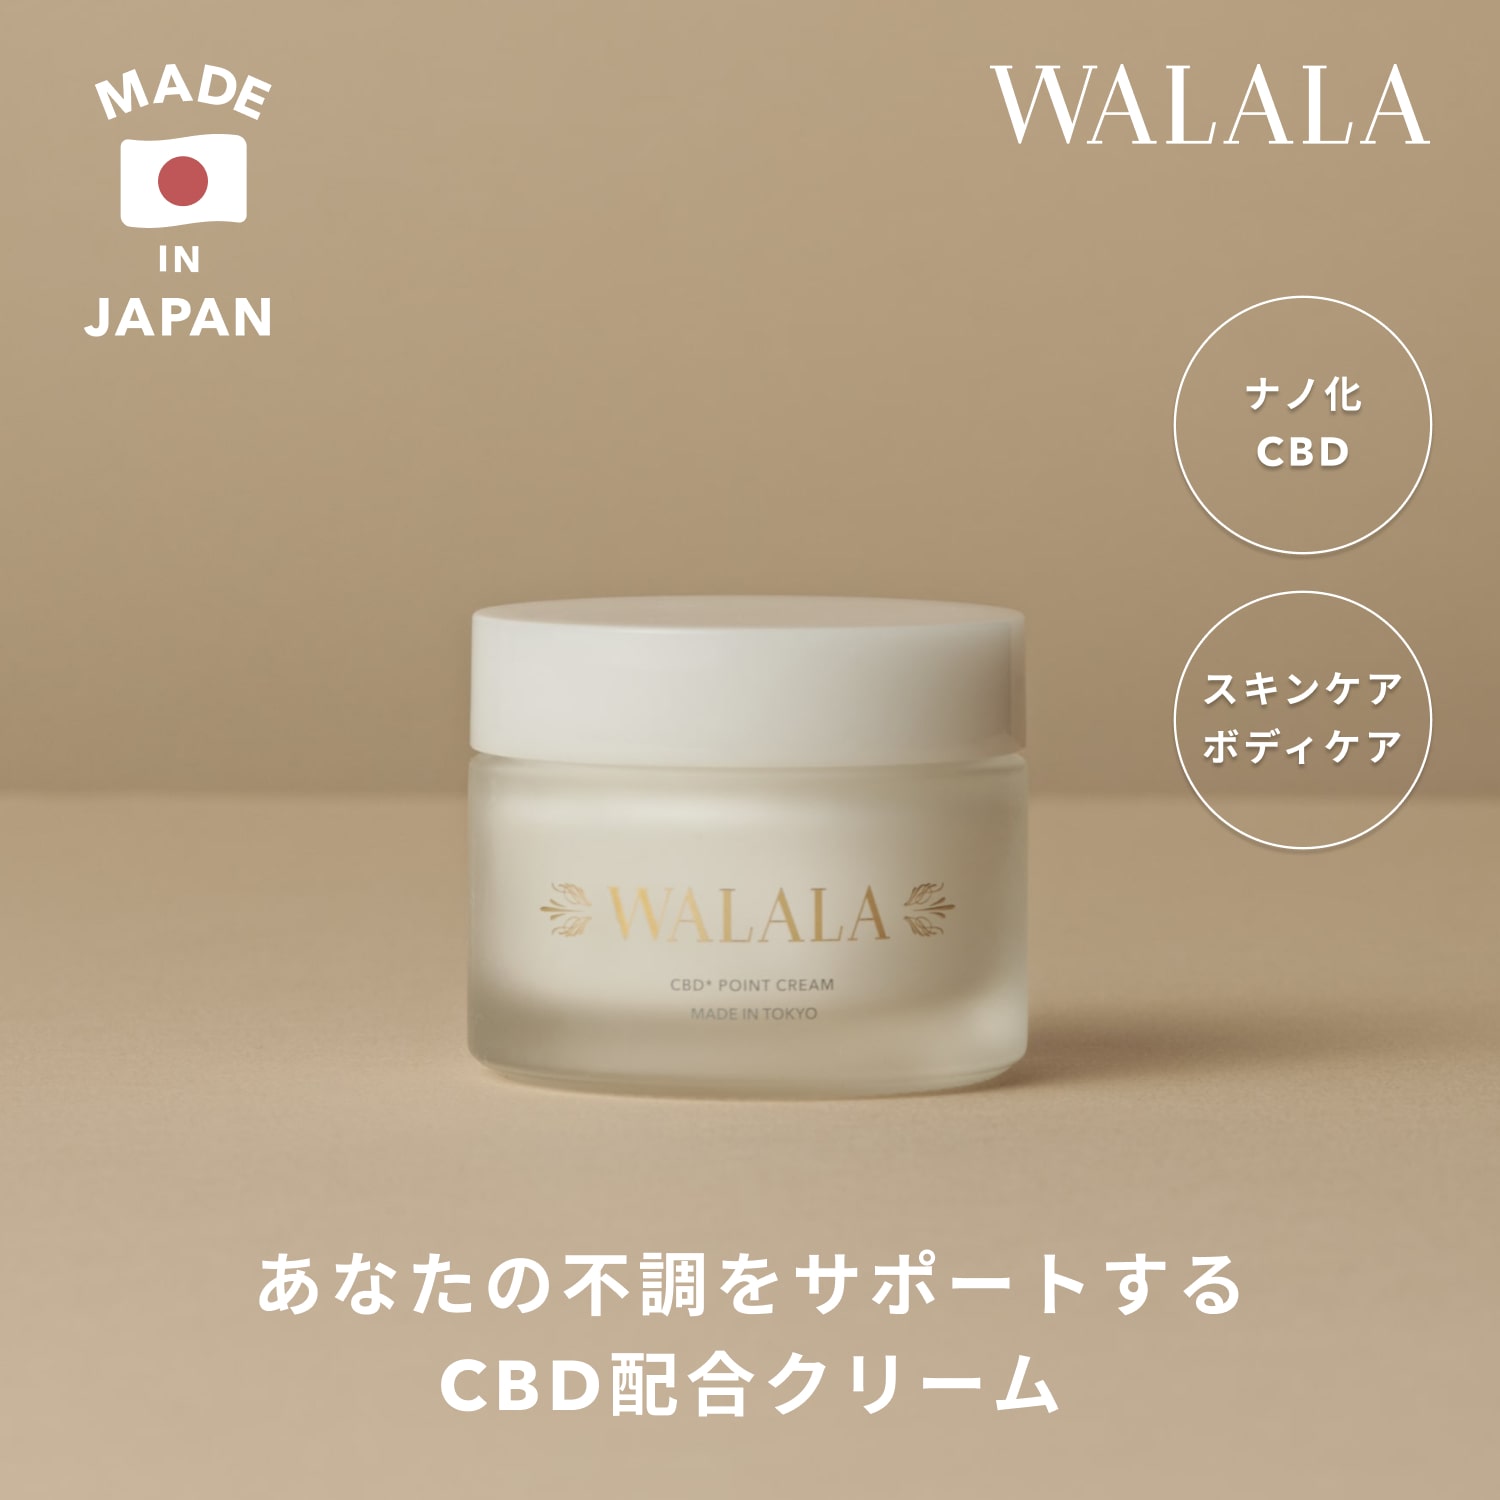 【WALALA 公式】CBD クリーム 50g ポイントクリーム グリチルリチン酸2K アラントイン